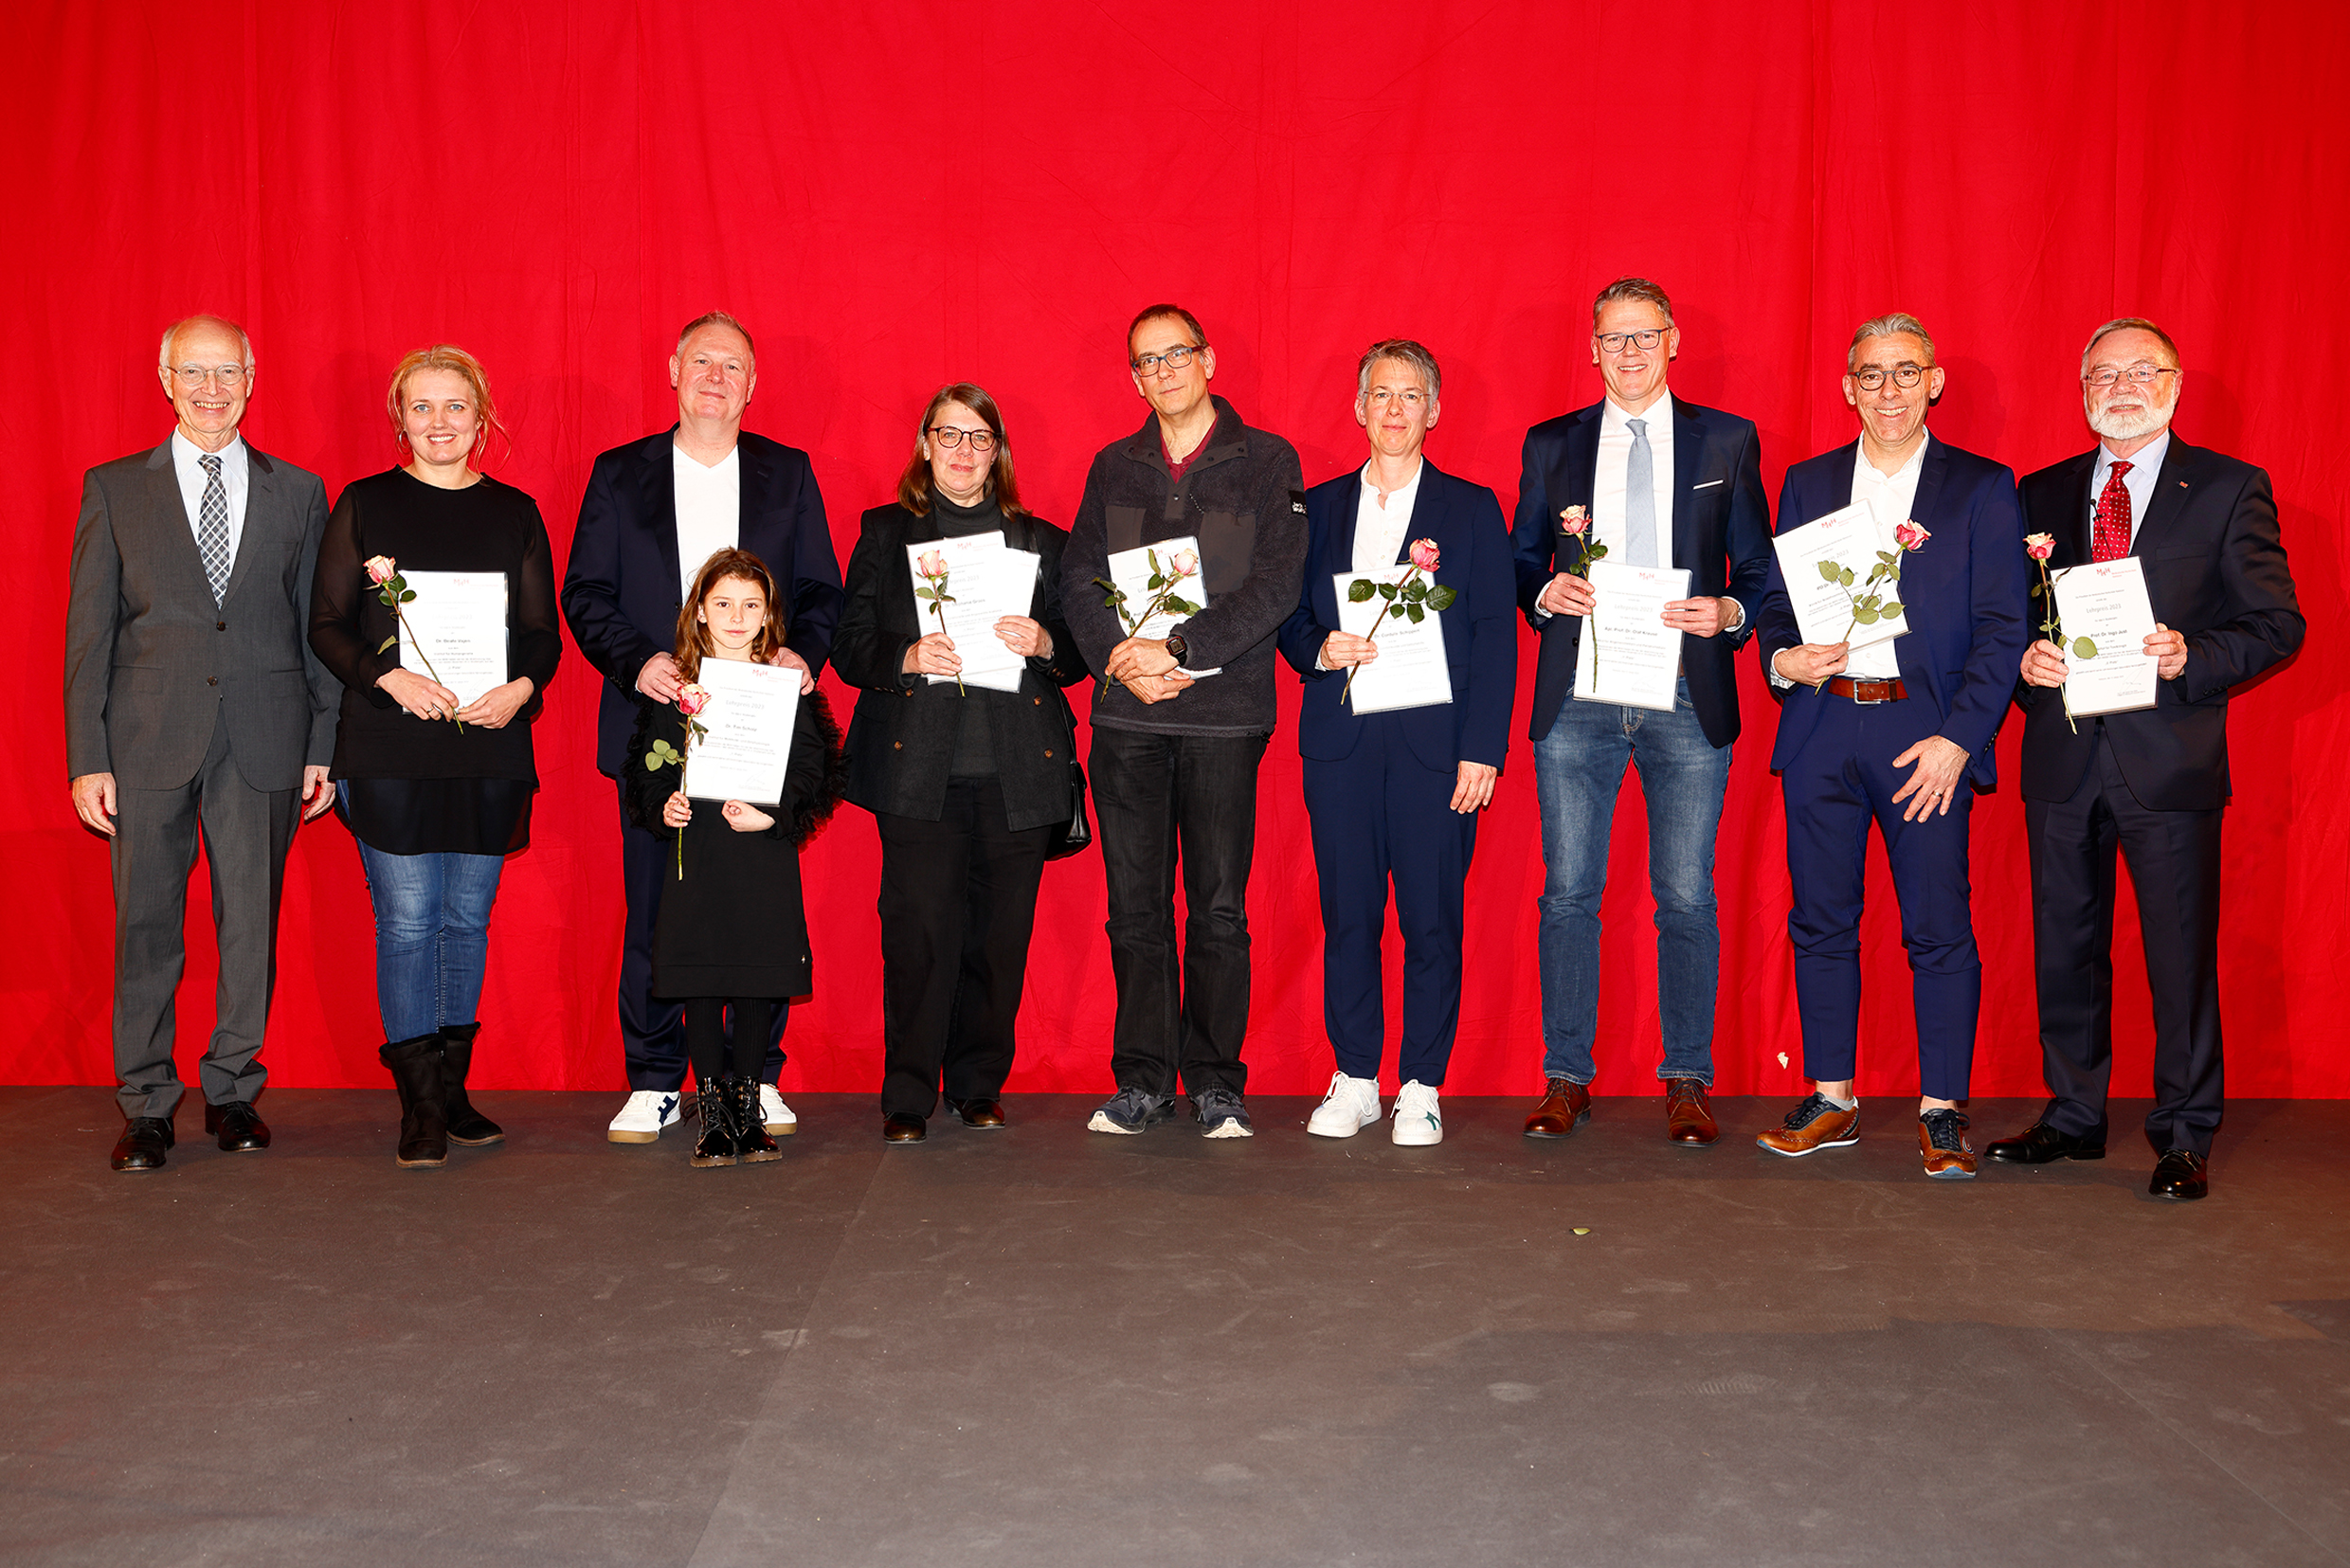 Auch die Lehrpreisträger:innen freuten sich über ihre Auszeichnung durch die Studierenden. Copyright: Andreas Genz, Hannover